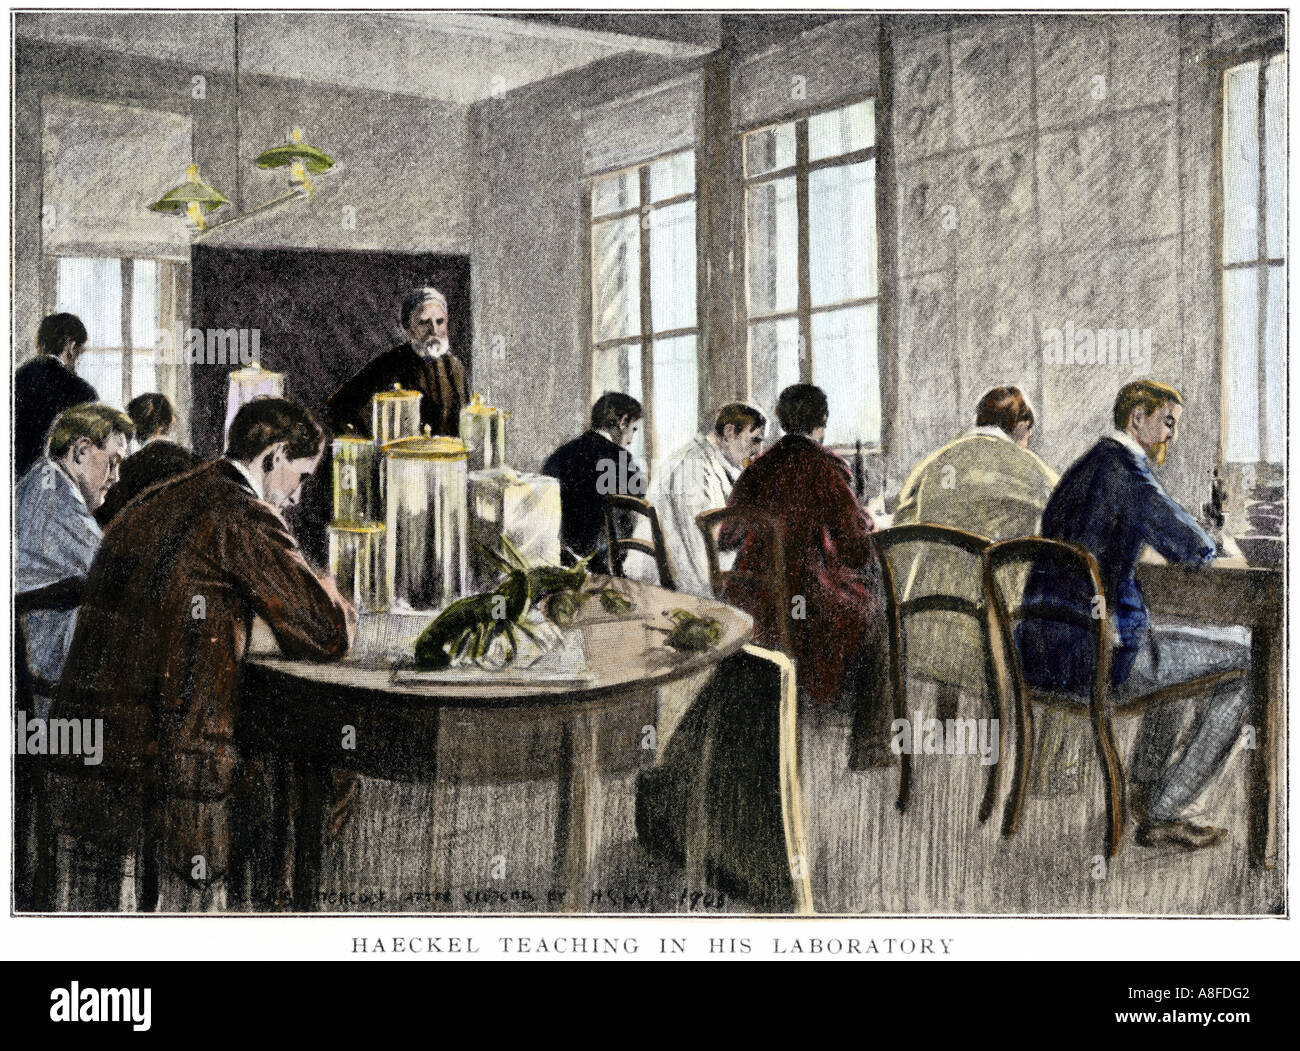 Ernst Haeckel Lehre in seinem Labor an der Universität Jena in Deutschland. Handcolorierte halftone einer Abbildung Stockfoto